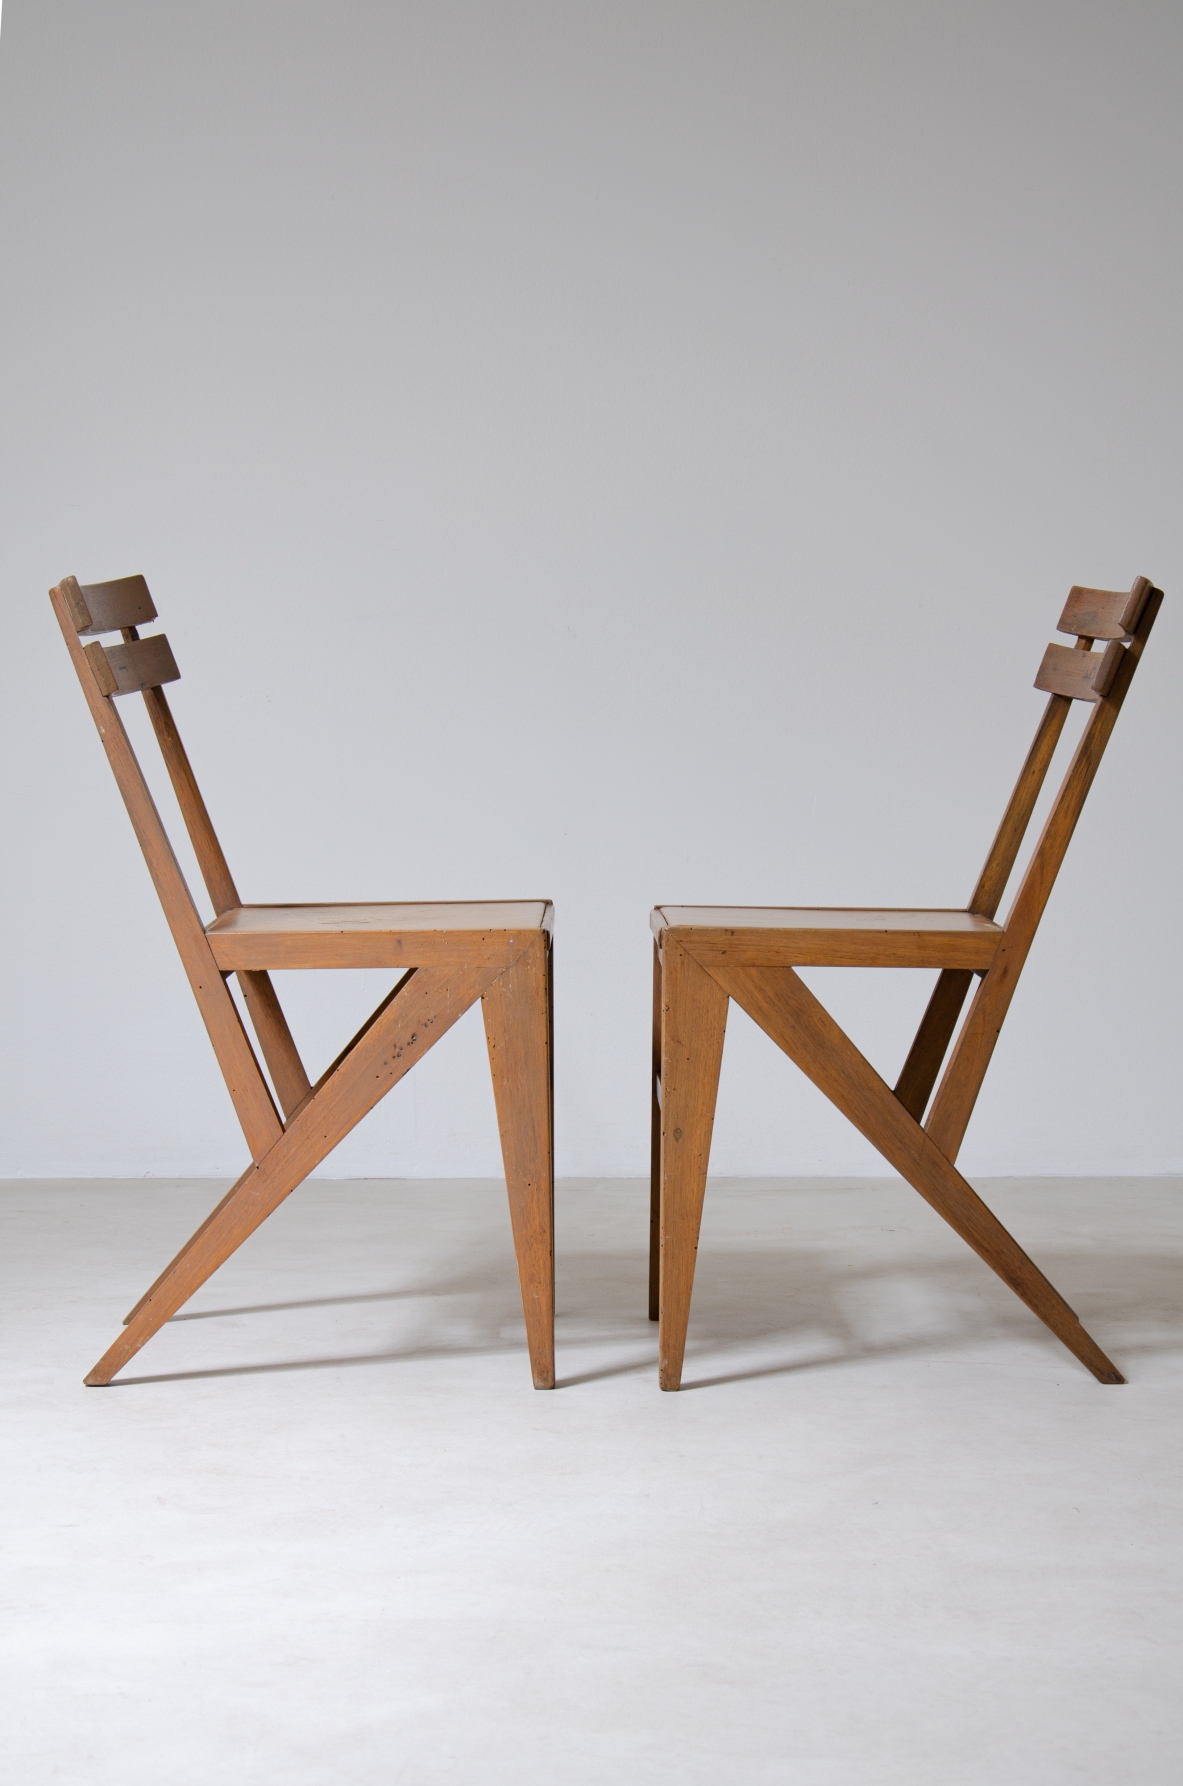 Coppia di sedie moderniste in legno.  Manifattura italiana, anni '50.